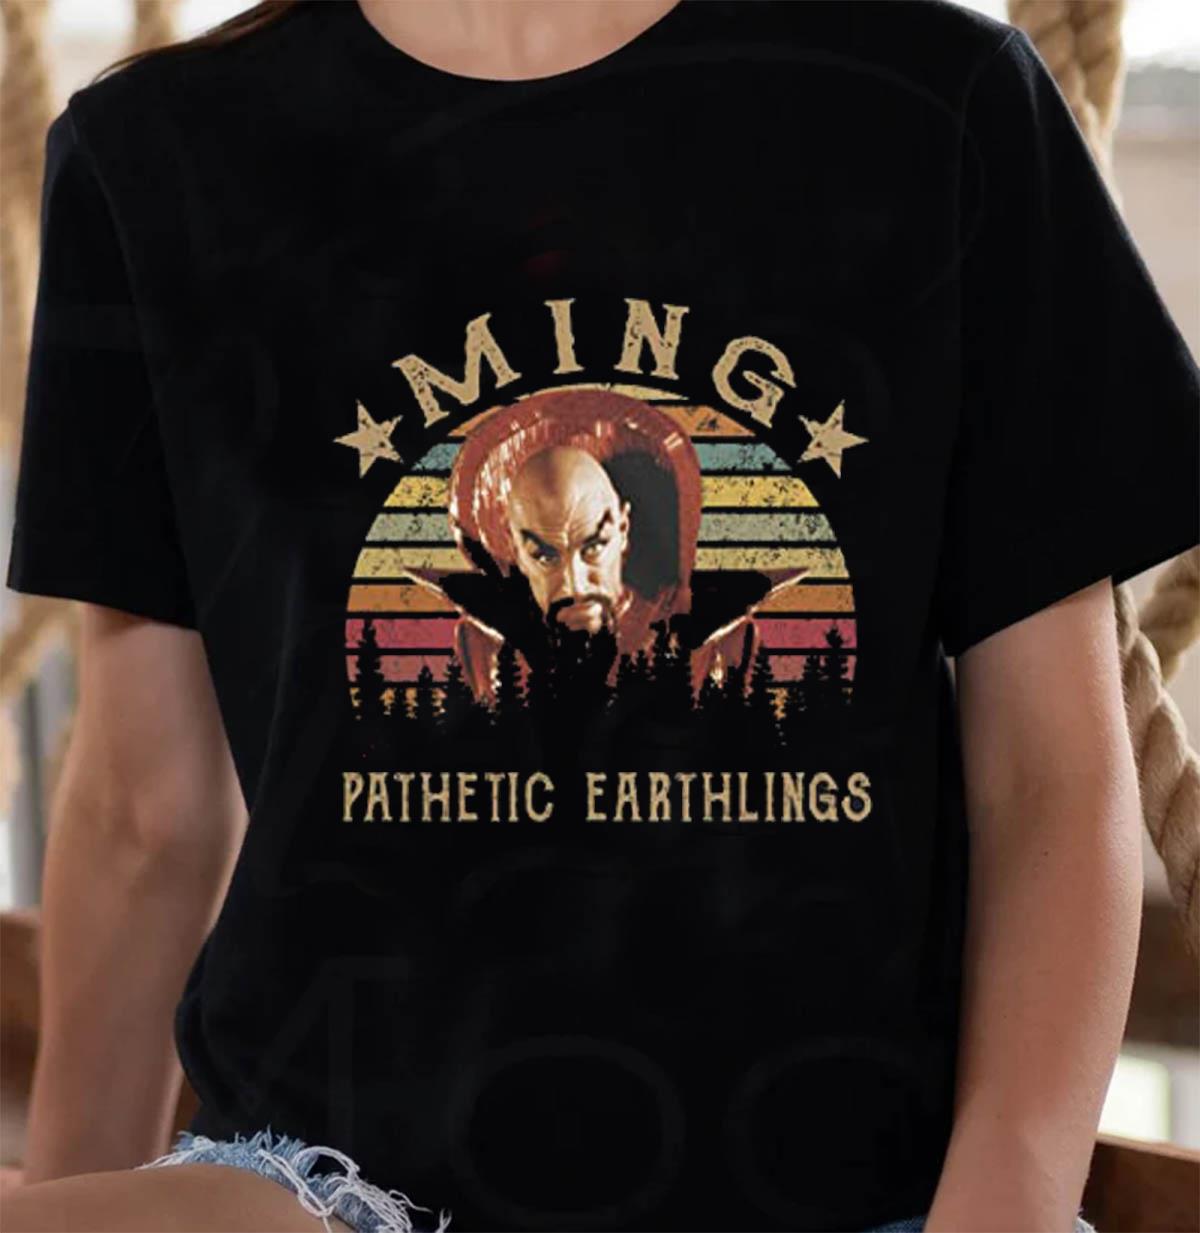 pathetic earthlings vintage t-shirt - Limotees